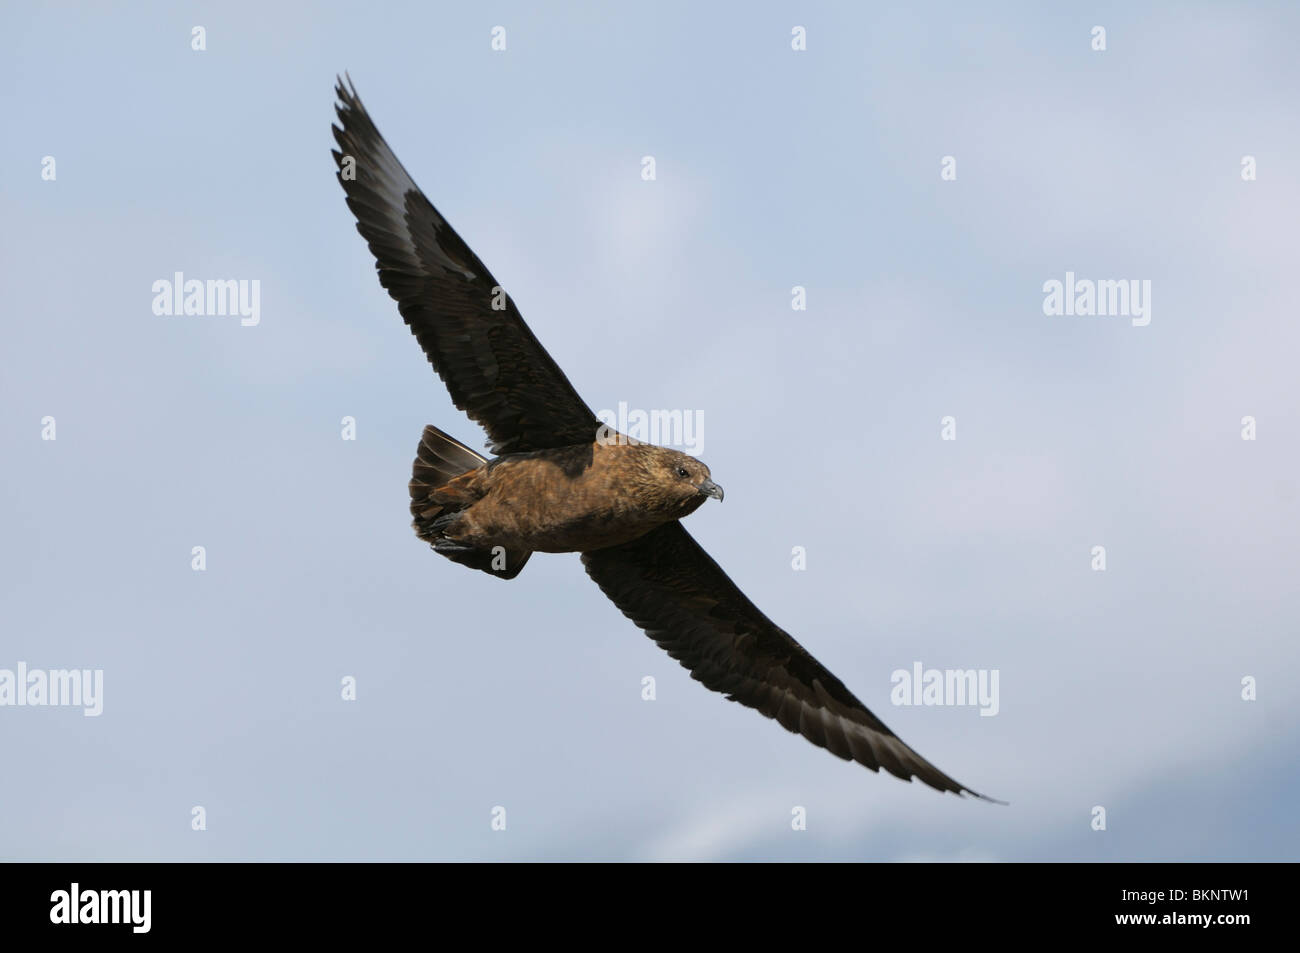 Vliegbeeld Grote Jager, onderaanzicht; Great Skua in flight, underwing view Stock Photo